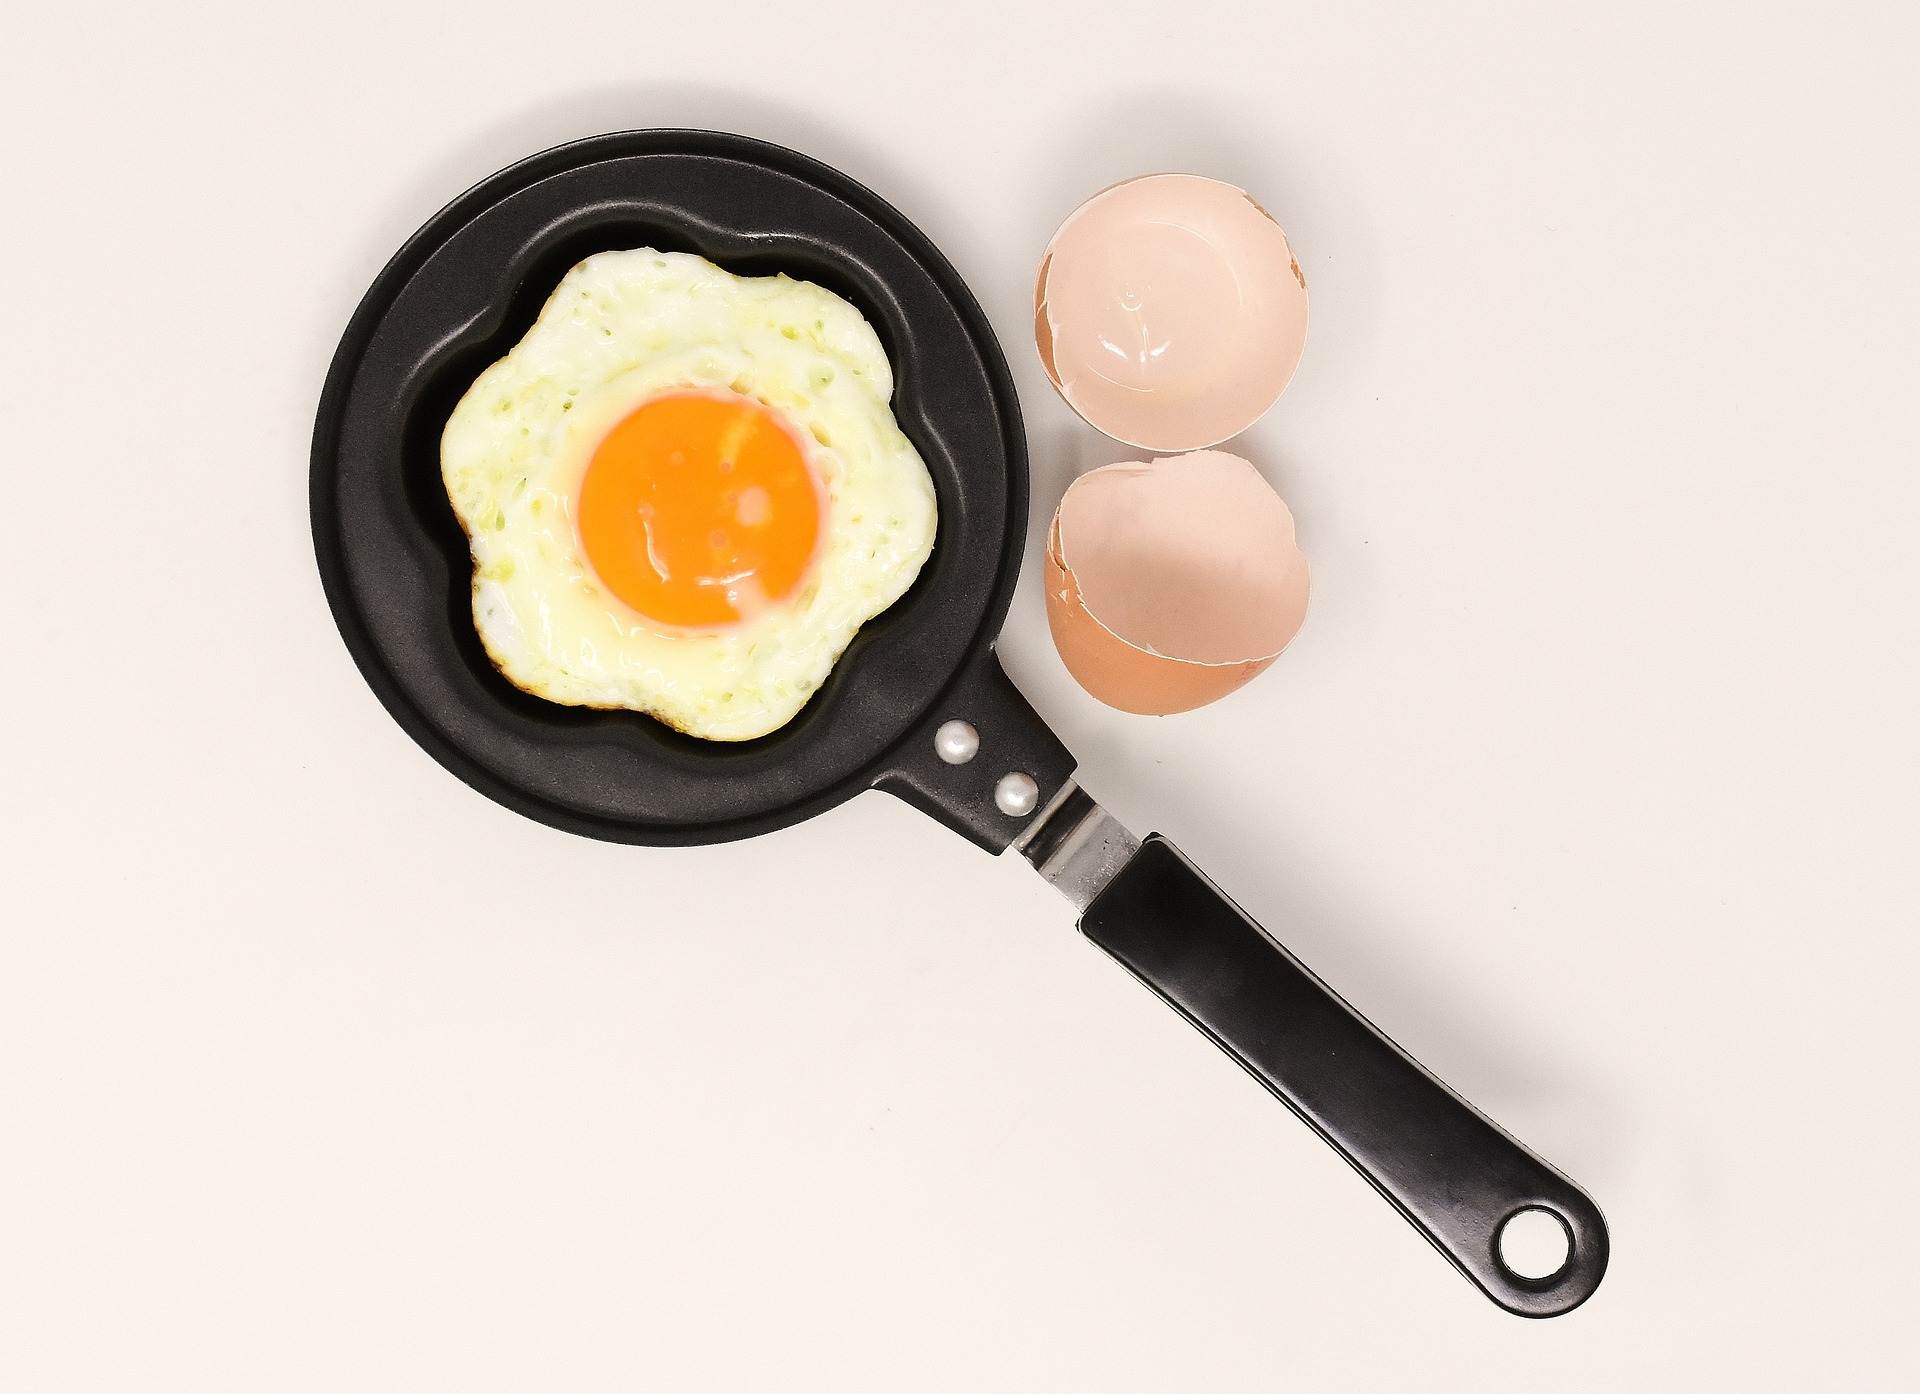 Os ovos sao um alimento extremamente nutritivo com uma variedade de vitaminas e minerais importantes